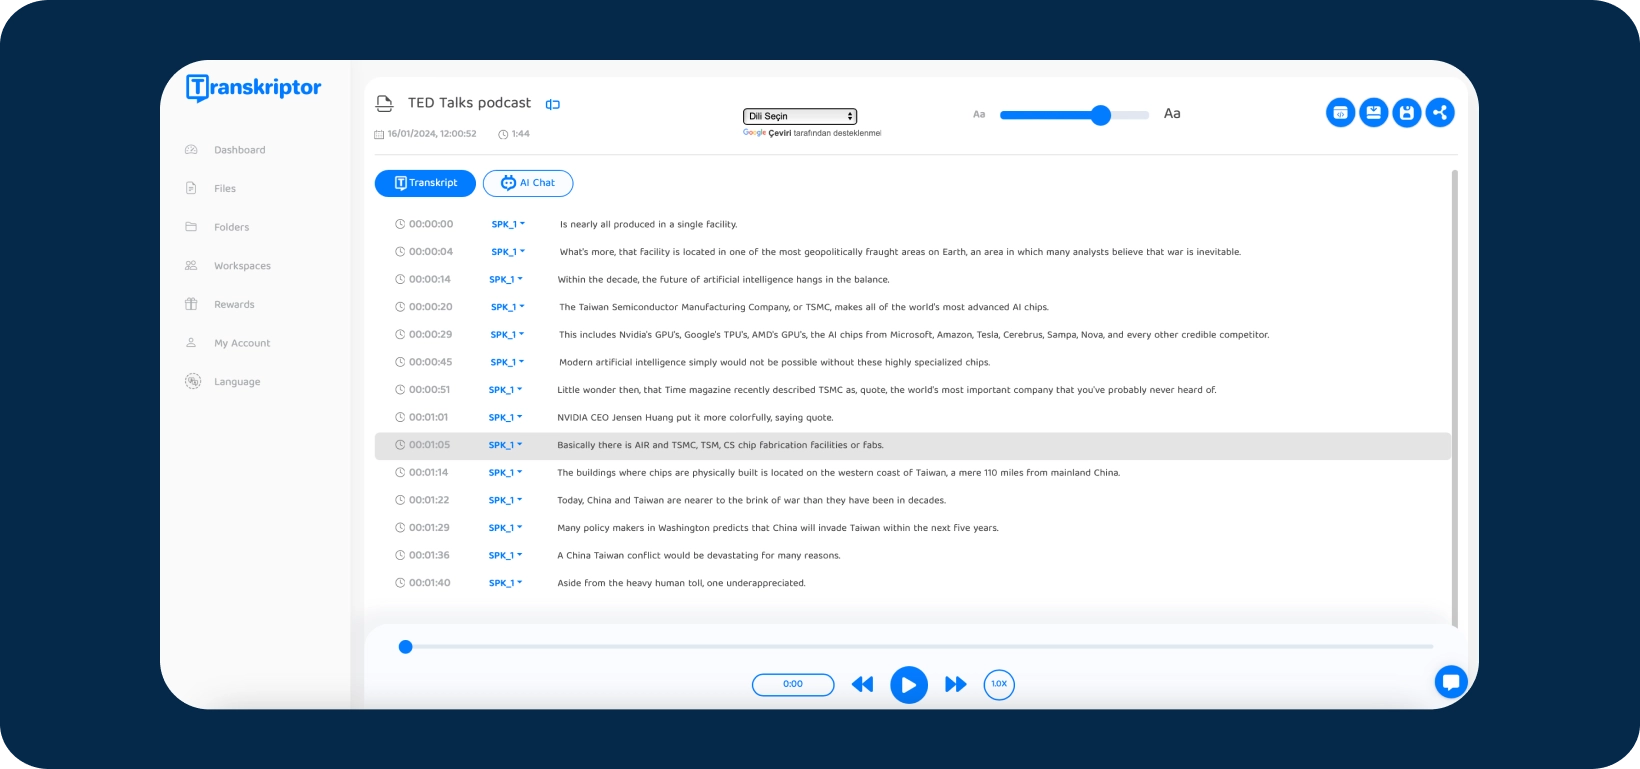 Screenshot der Transkriptor App-Oberfläche, die einen TED Talks-Podcast zeigt, der transkribiert wird.